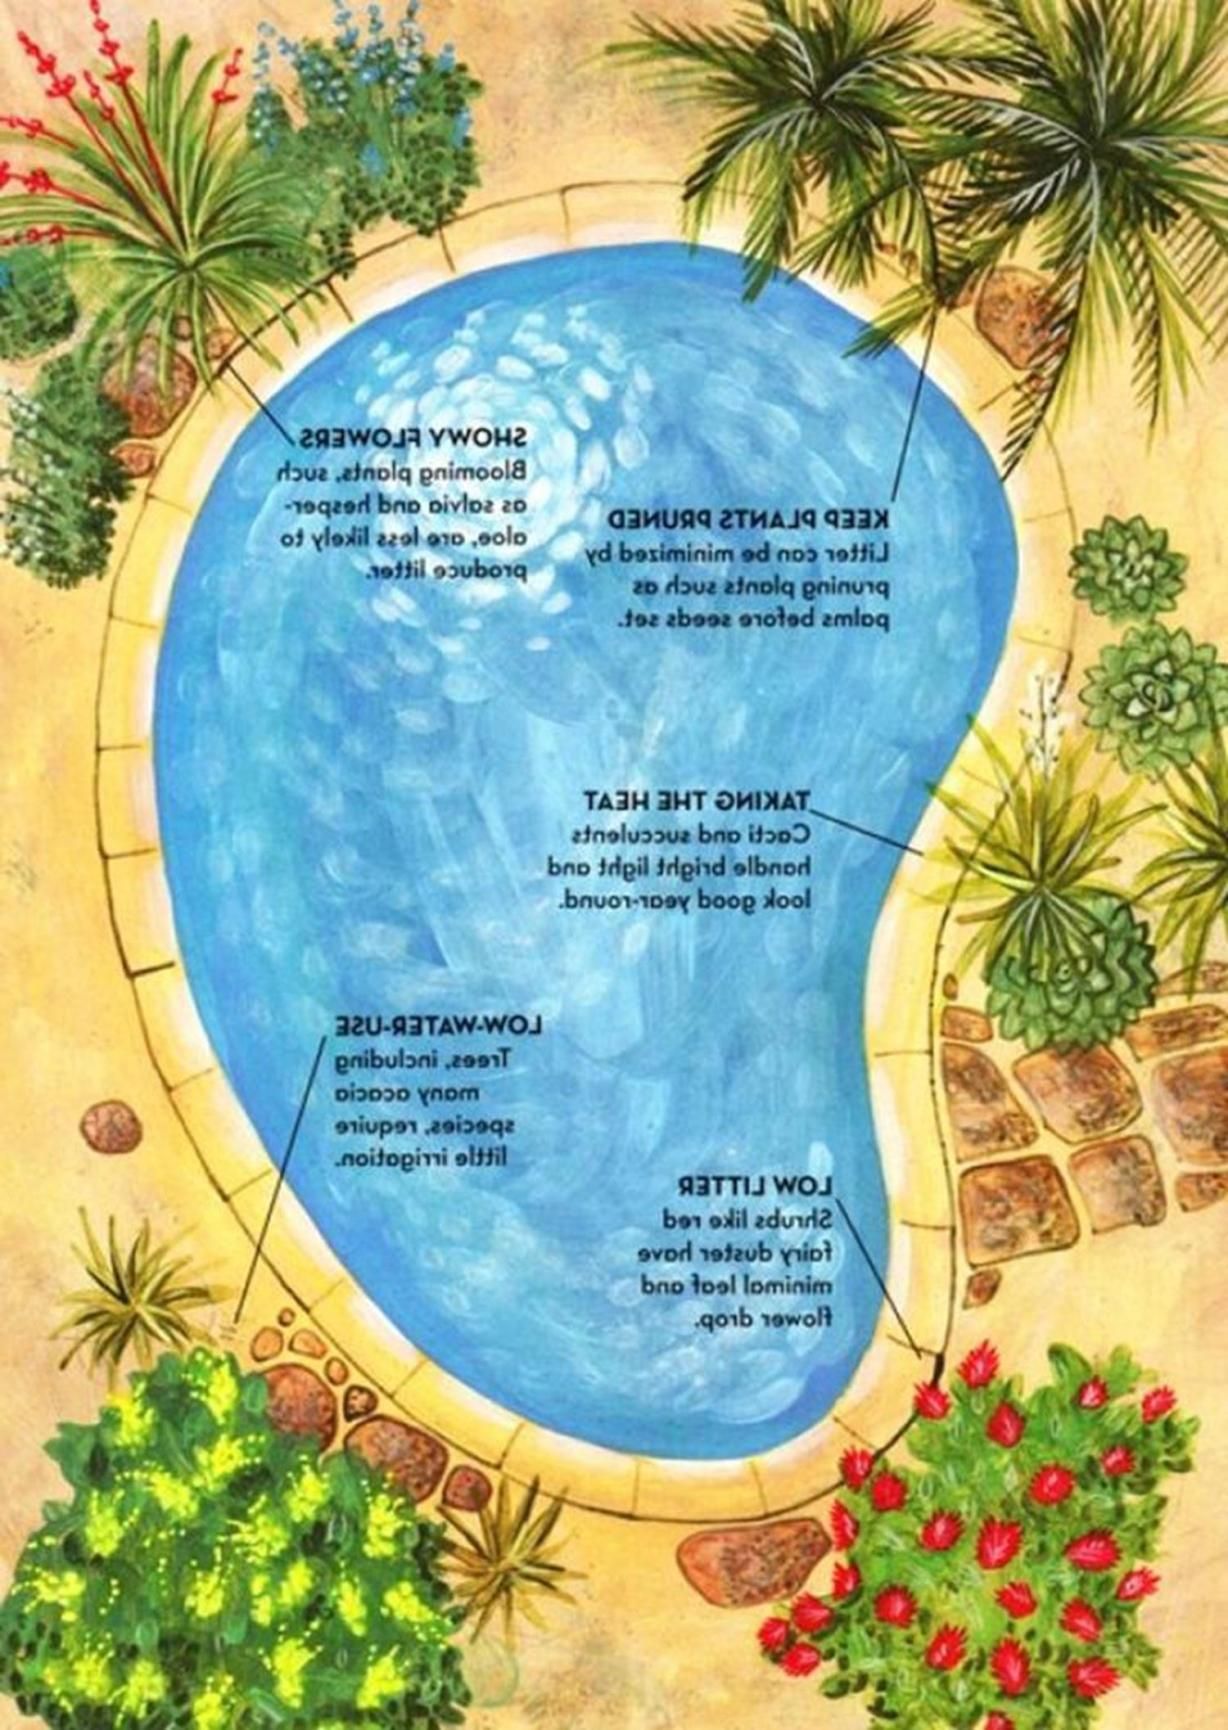 Pool Garten Gestaltung Luxus 20 Amazing Pool Landscaping Design Ideas 2019 14 In 2019